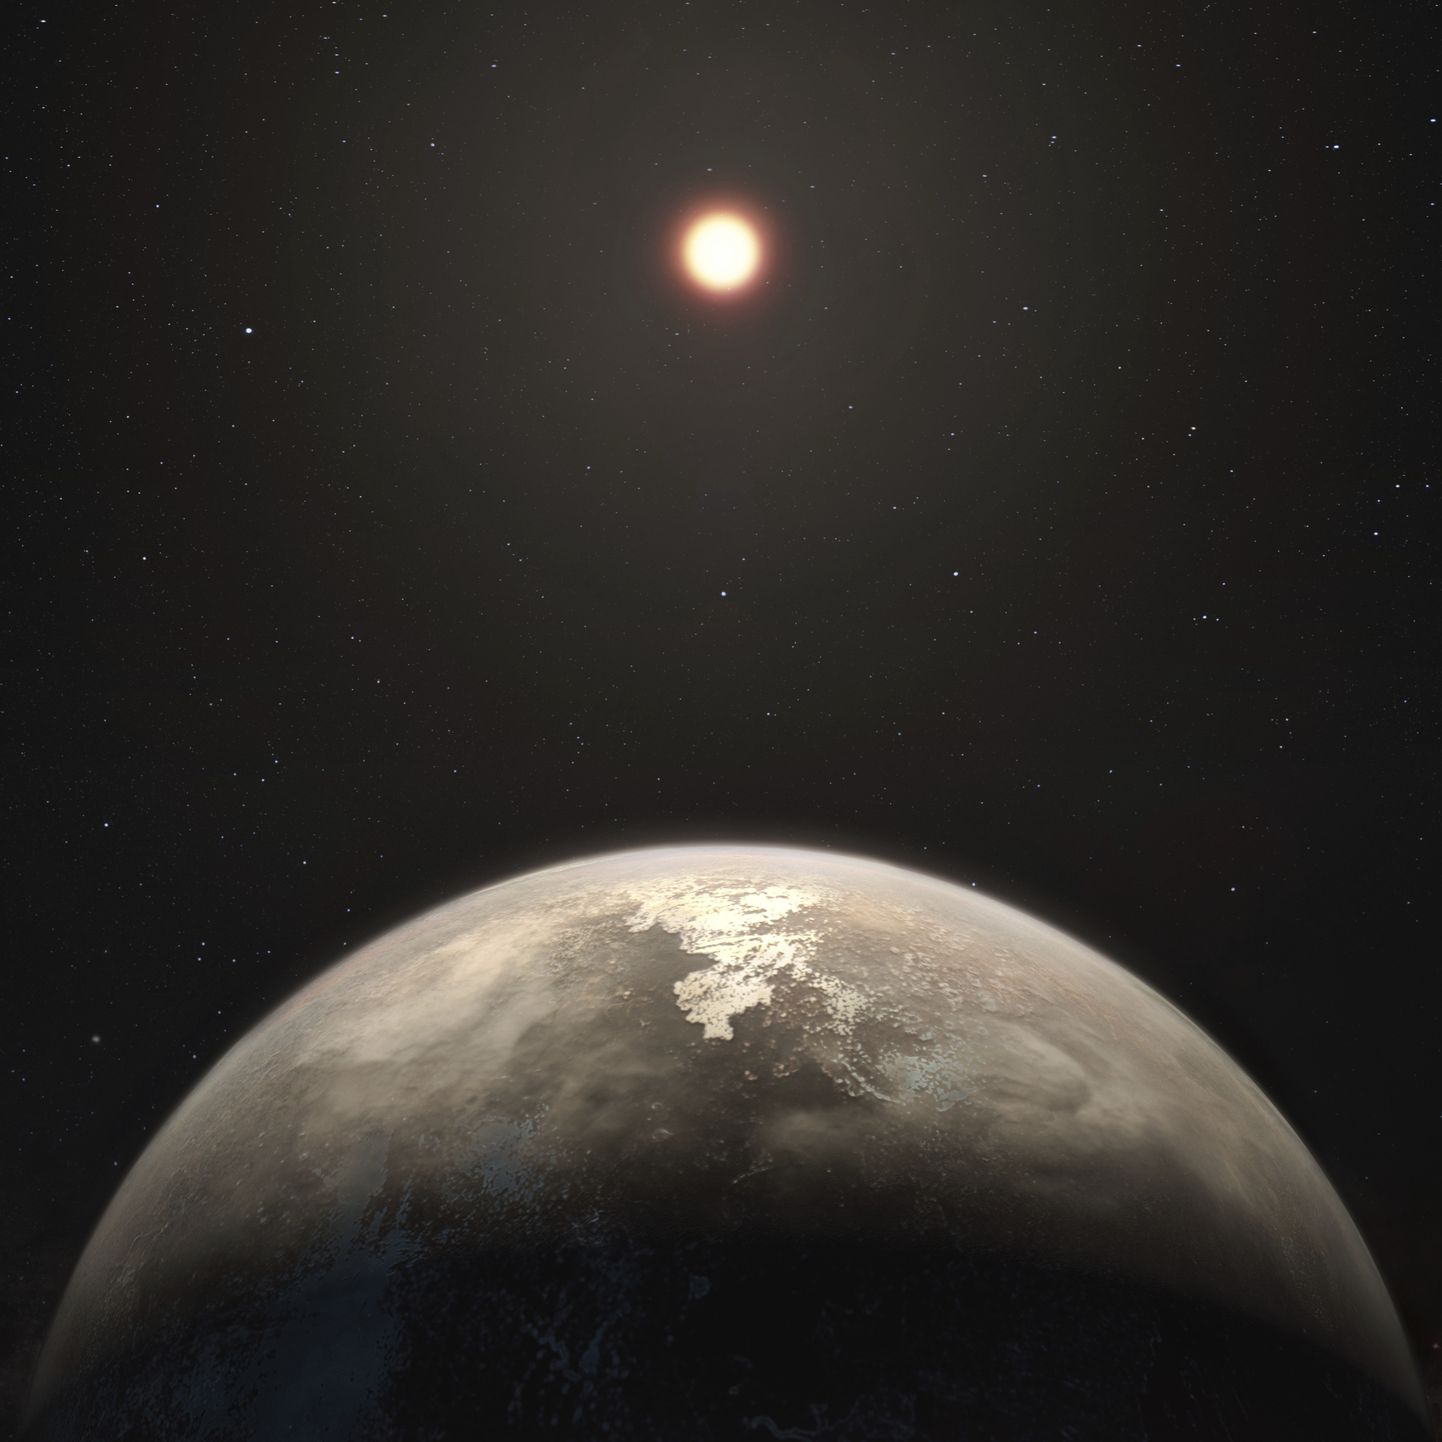 Näide eksoplaneedist. Pilt on illustreeriv